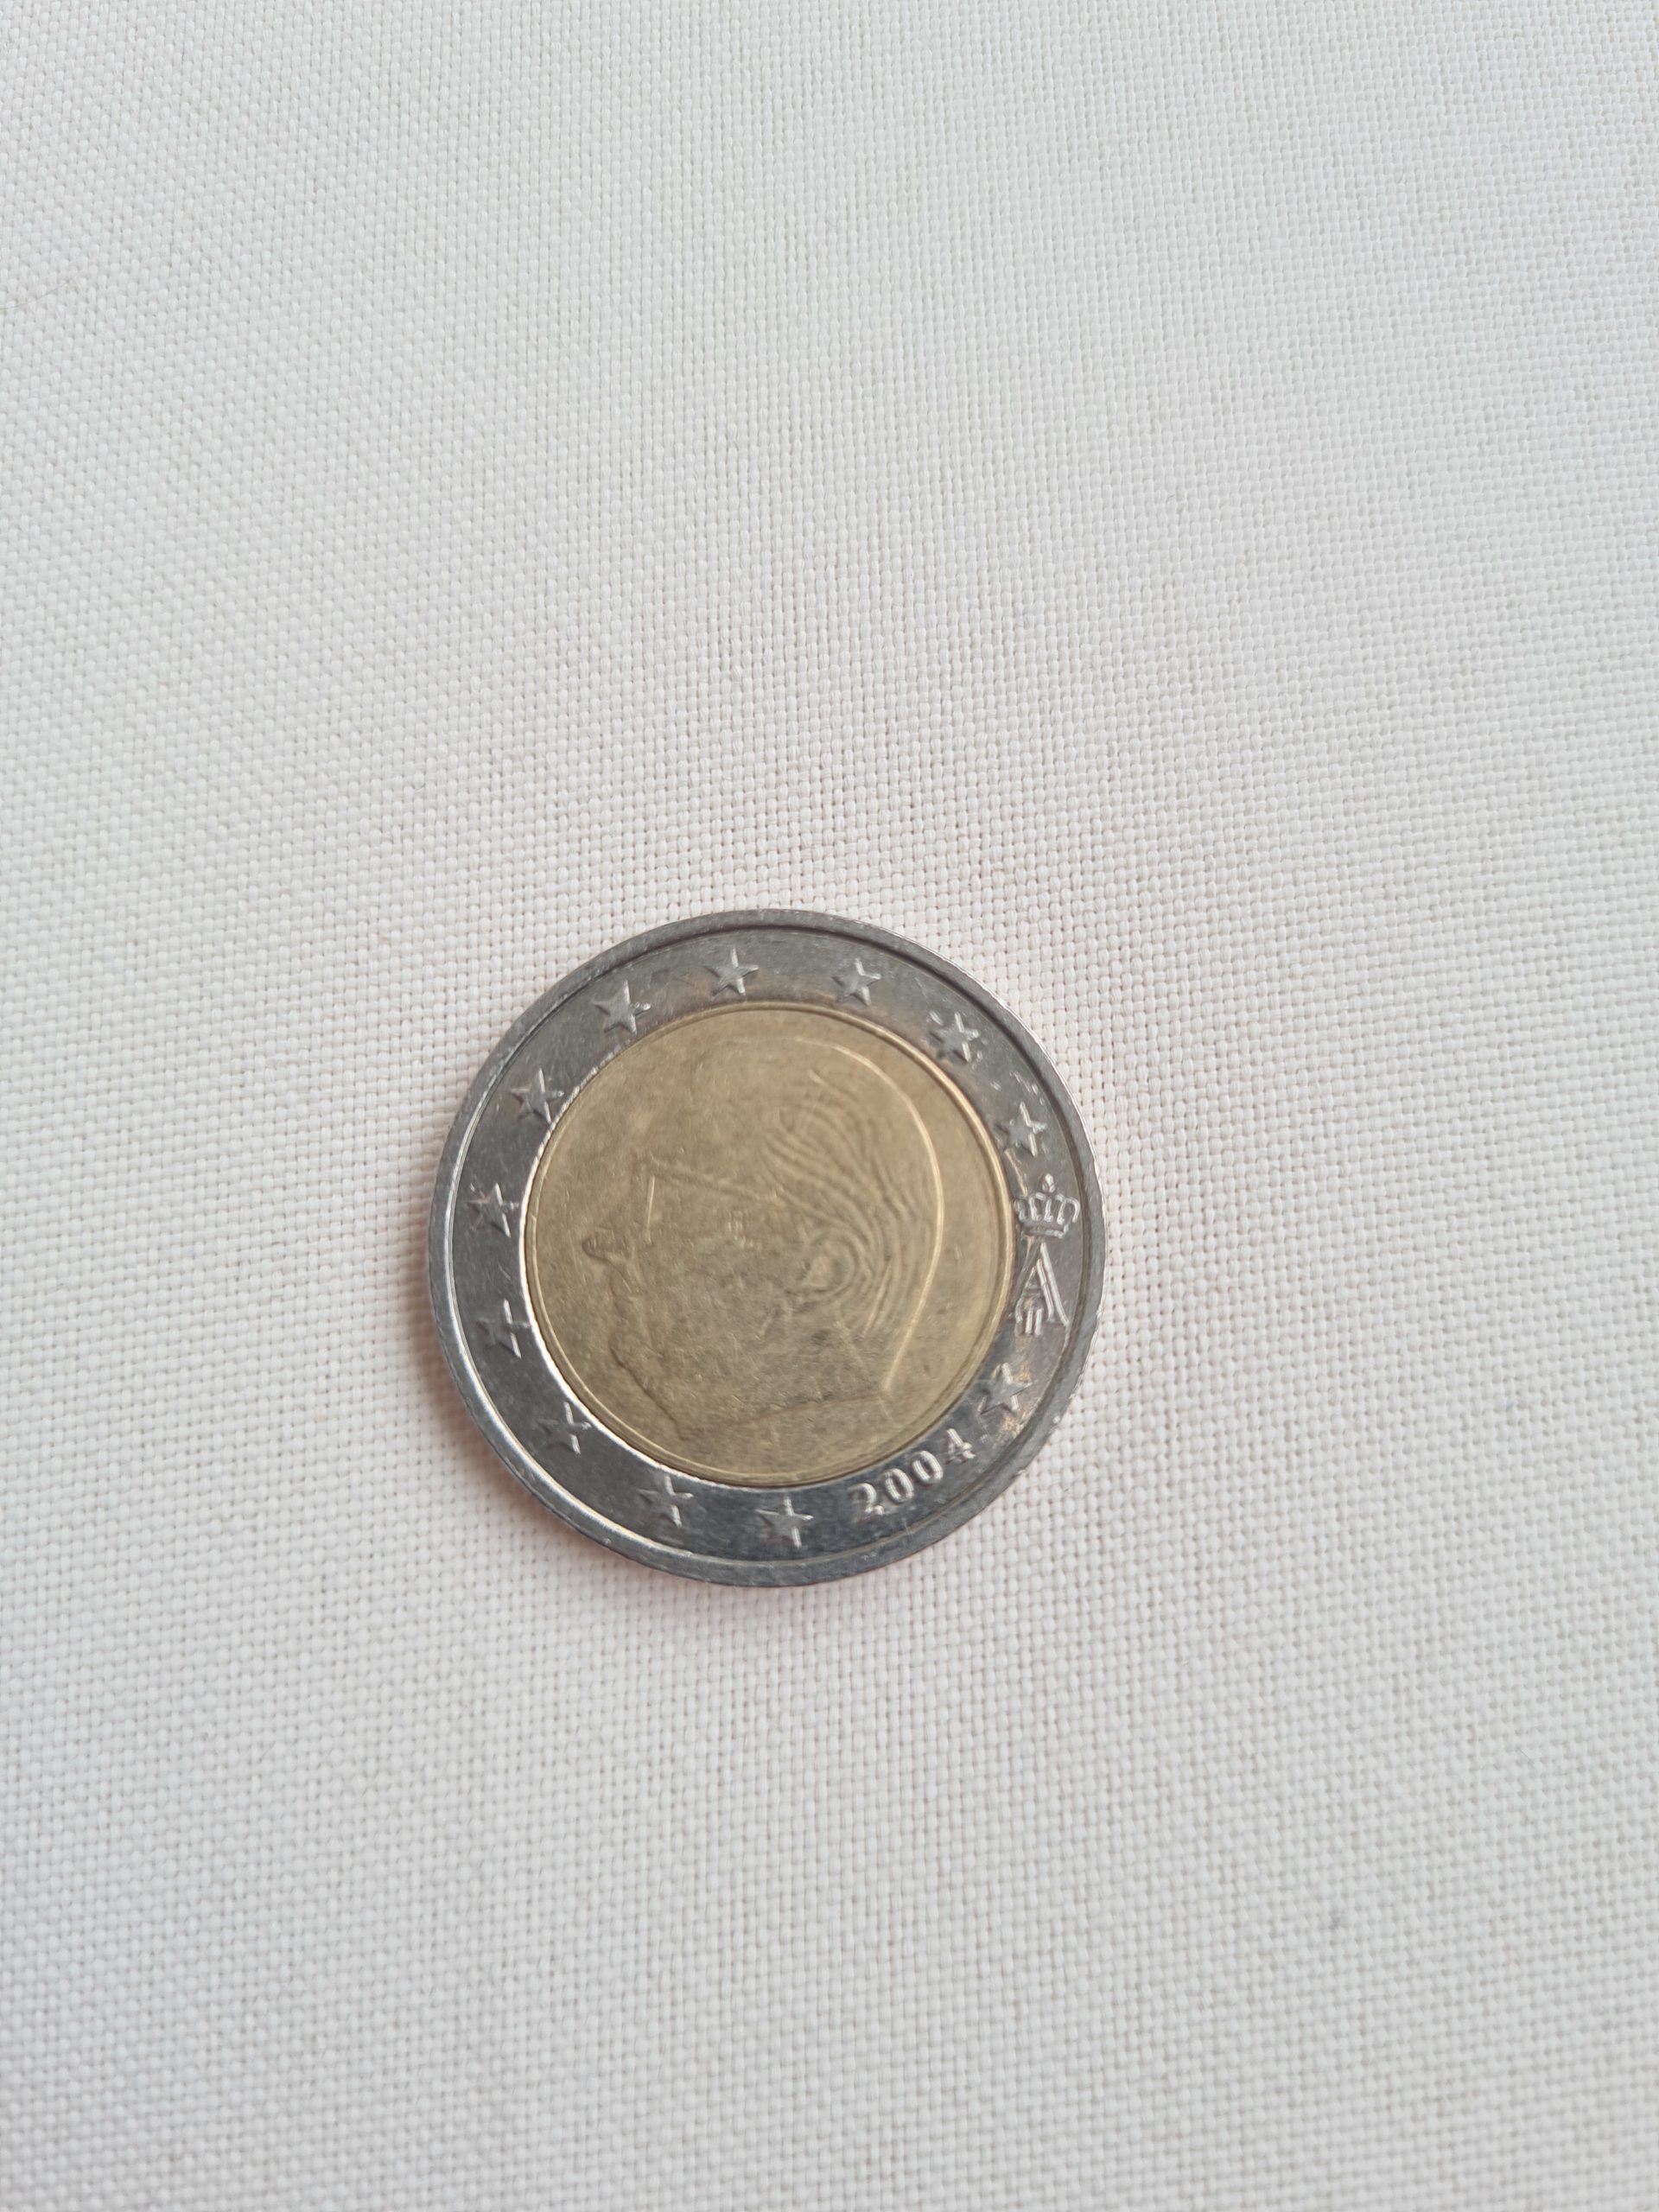 mint error coin – 2€ Euro Münze Fehlprägung Deutschland WWU 1999-2009